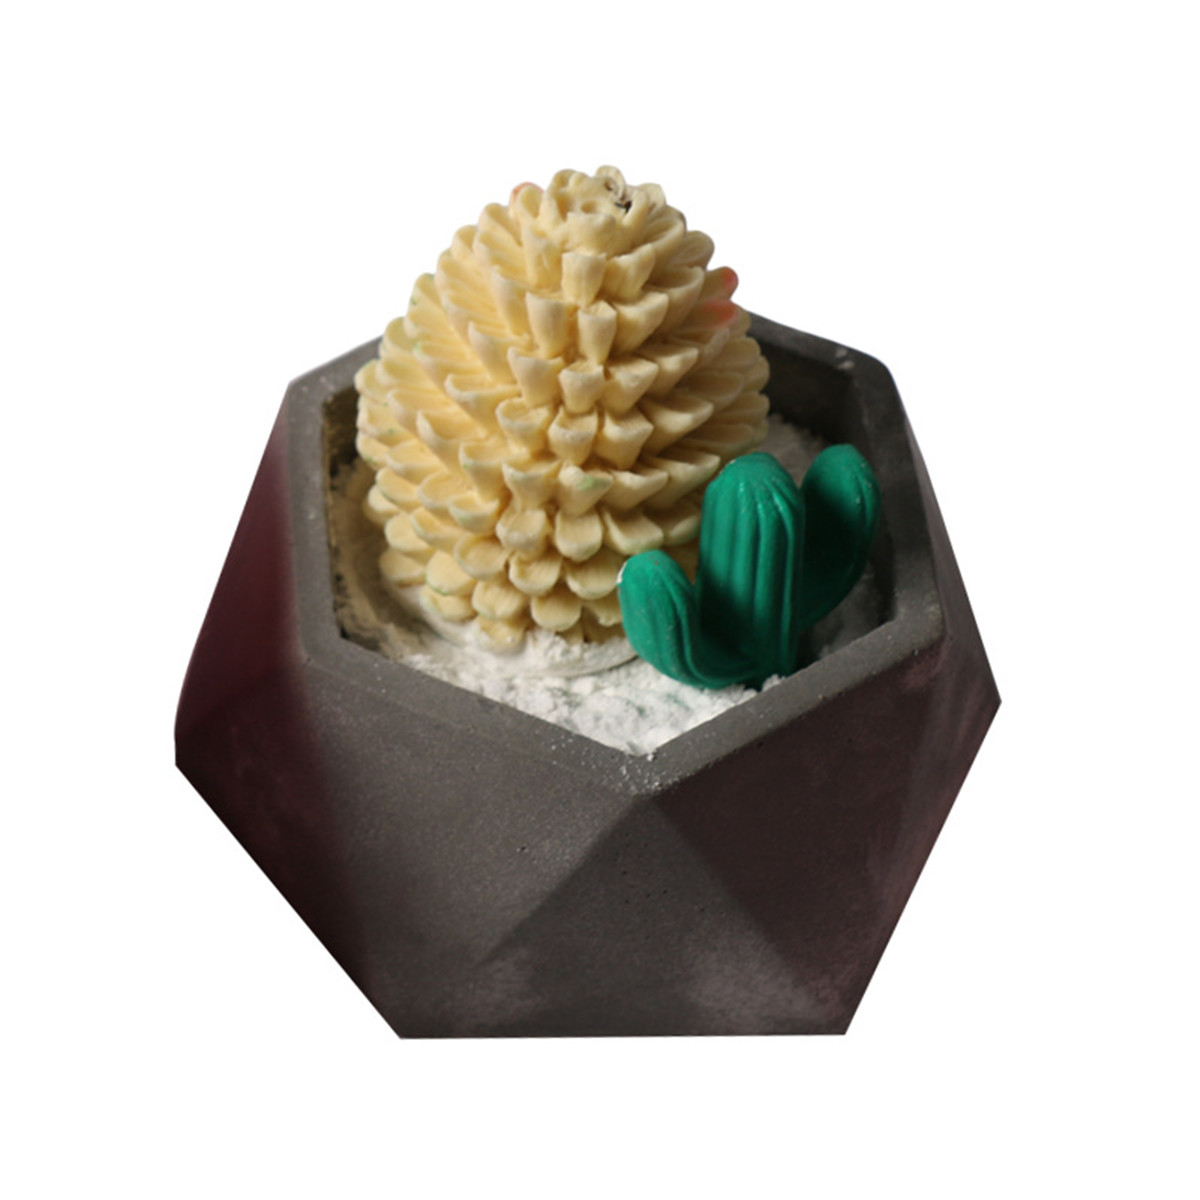 Handmade-Silicone-Flower-Pot-Mould-3D-Geometric-Concrete-Succulent-Planter-Craft-1289100